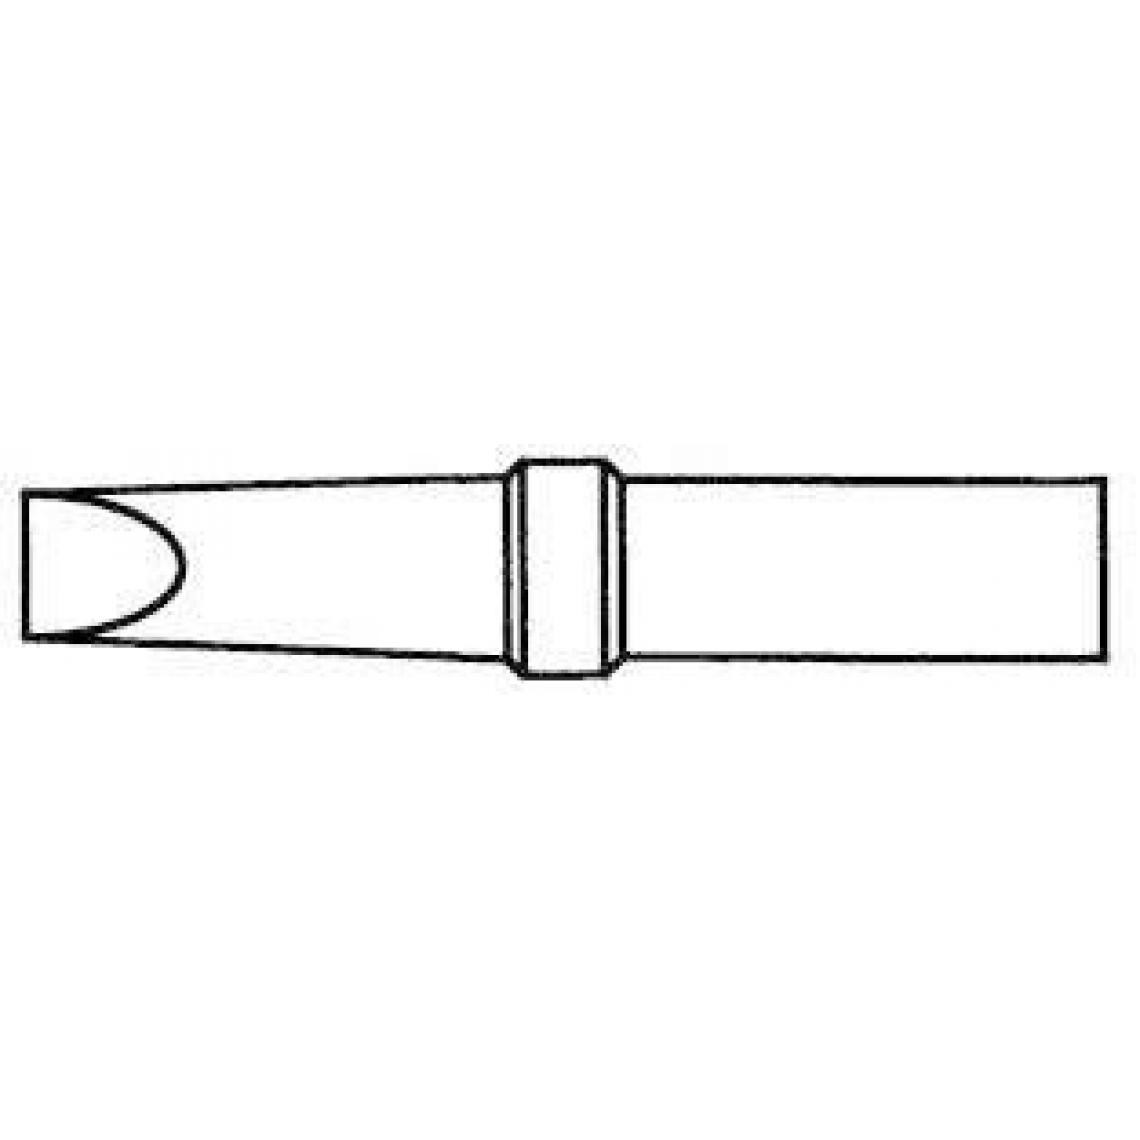 Inconnu - Panne de fer à souder forme pointue Weller Professional 4ETD-1 Taille de la panne 4.6 mm 1 pc(s) - Accessoires de soudure